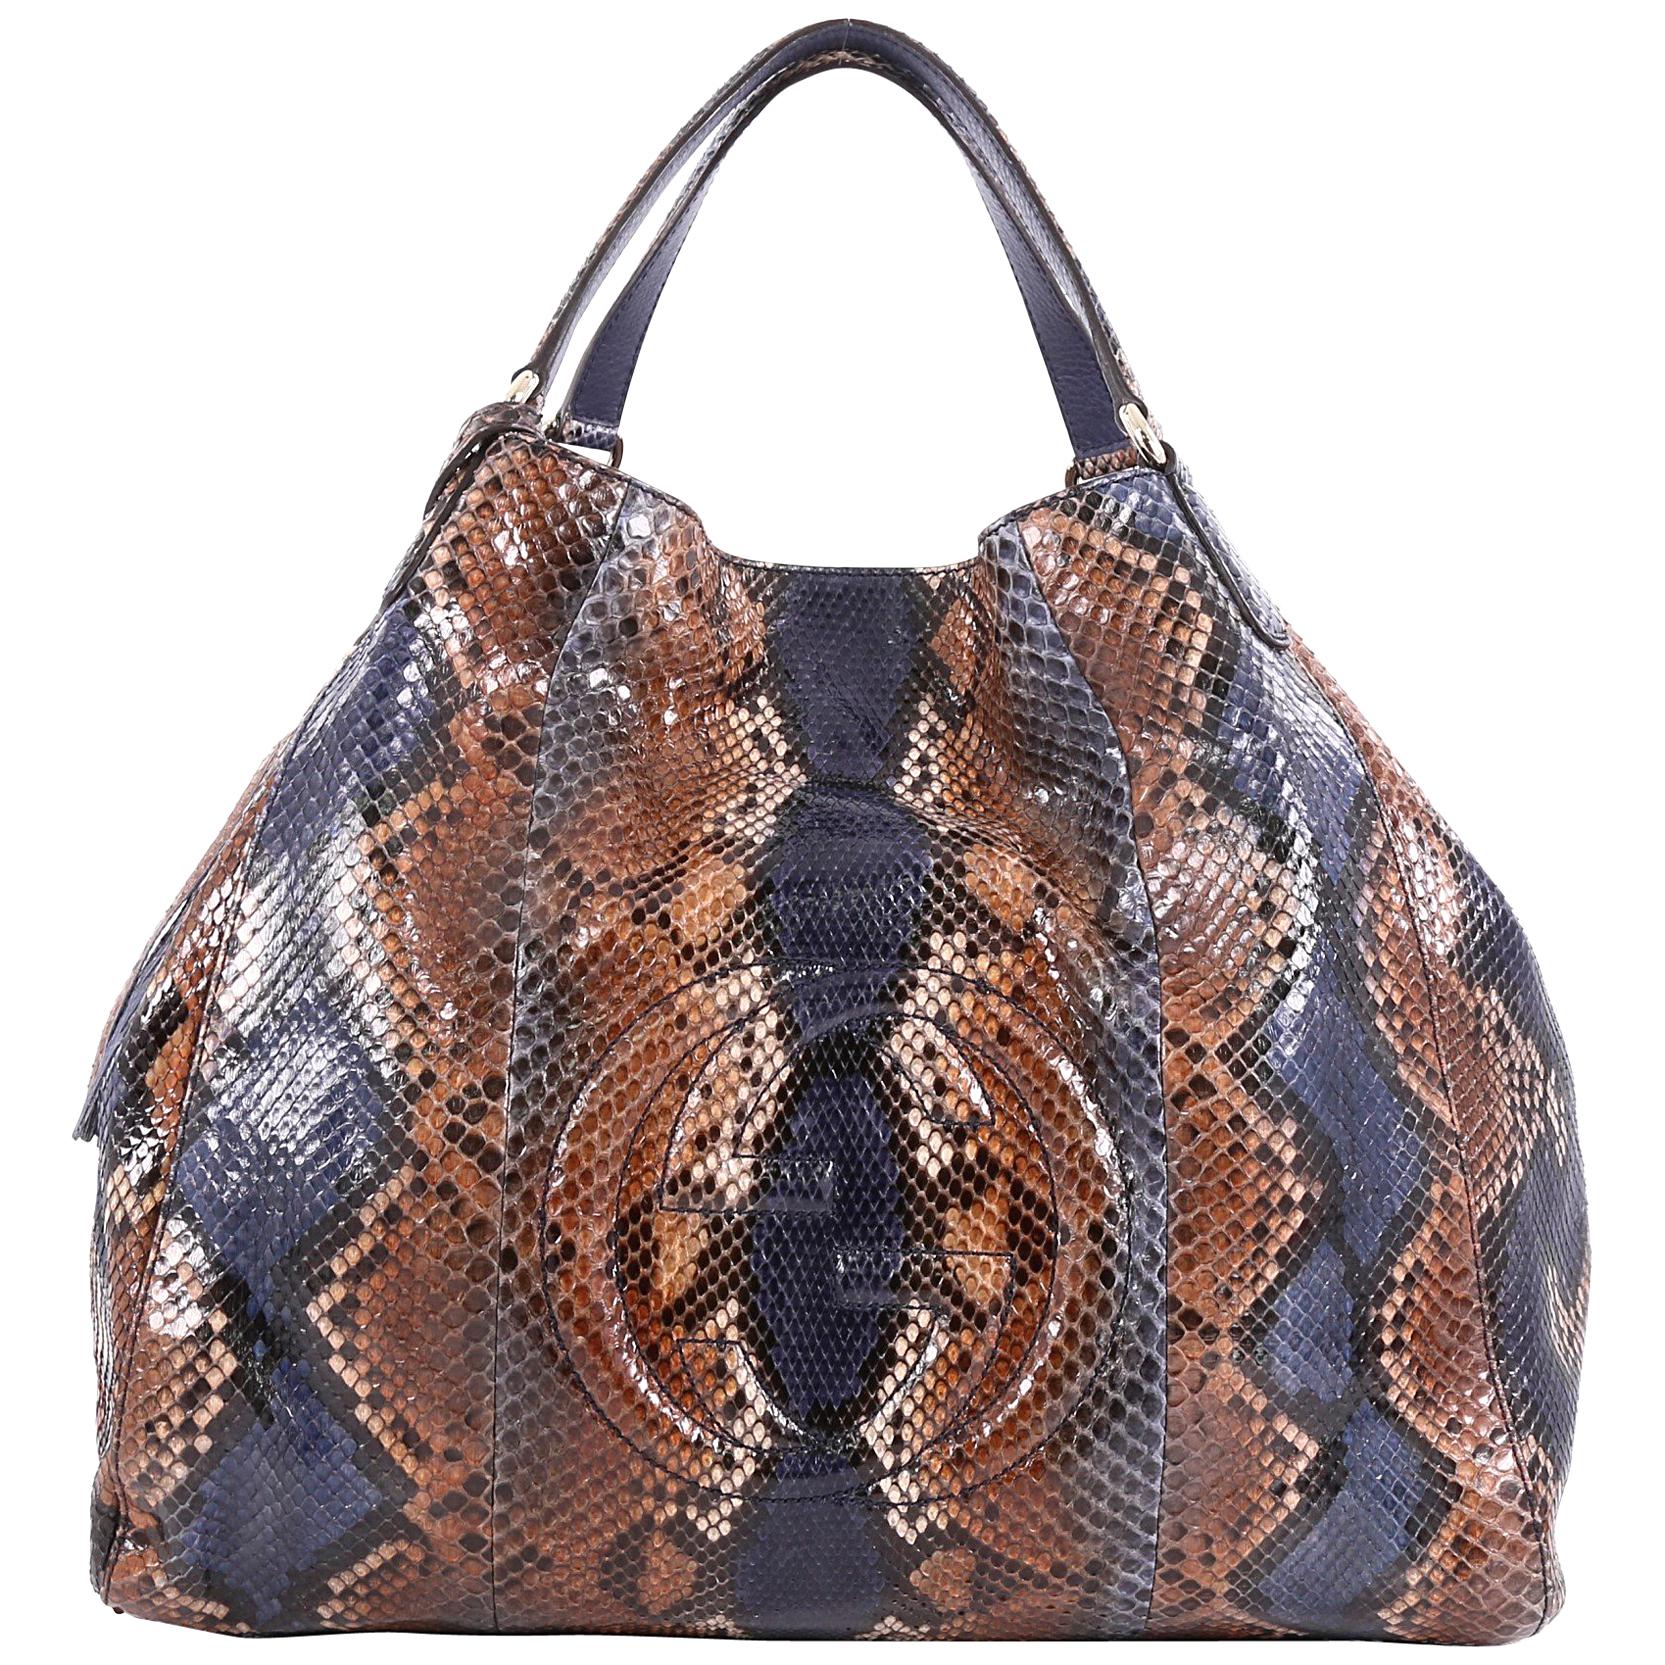 Gucci Soho Shoulder Bag Python Large